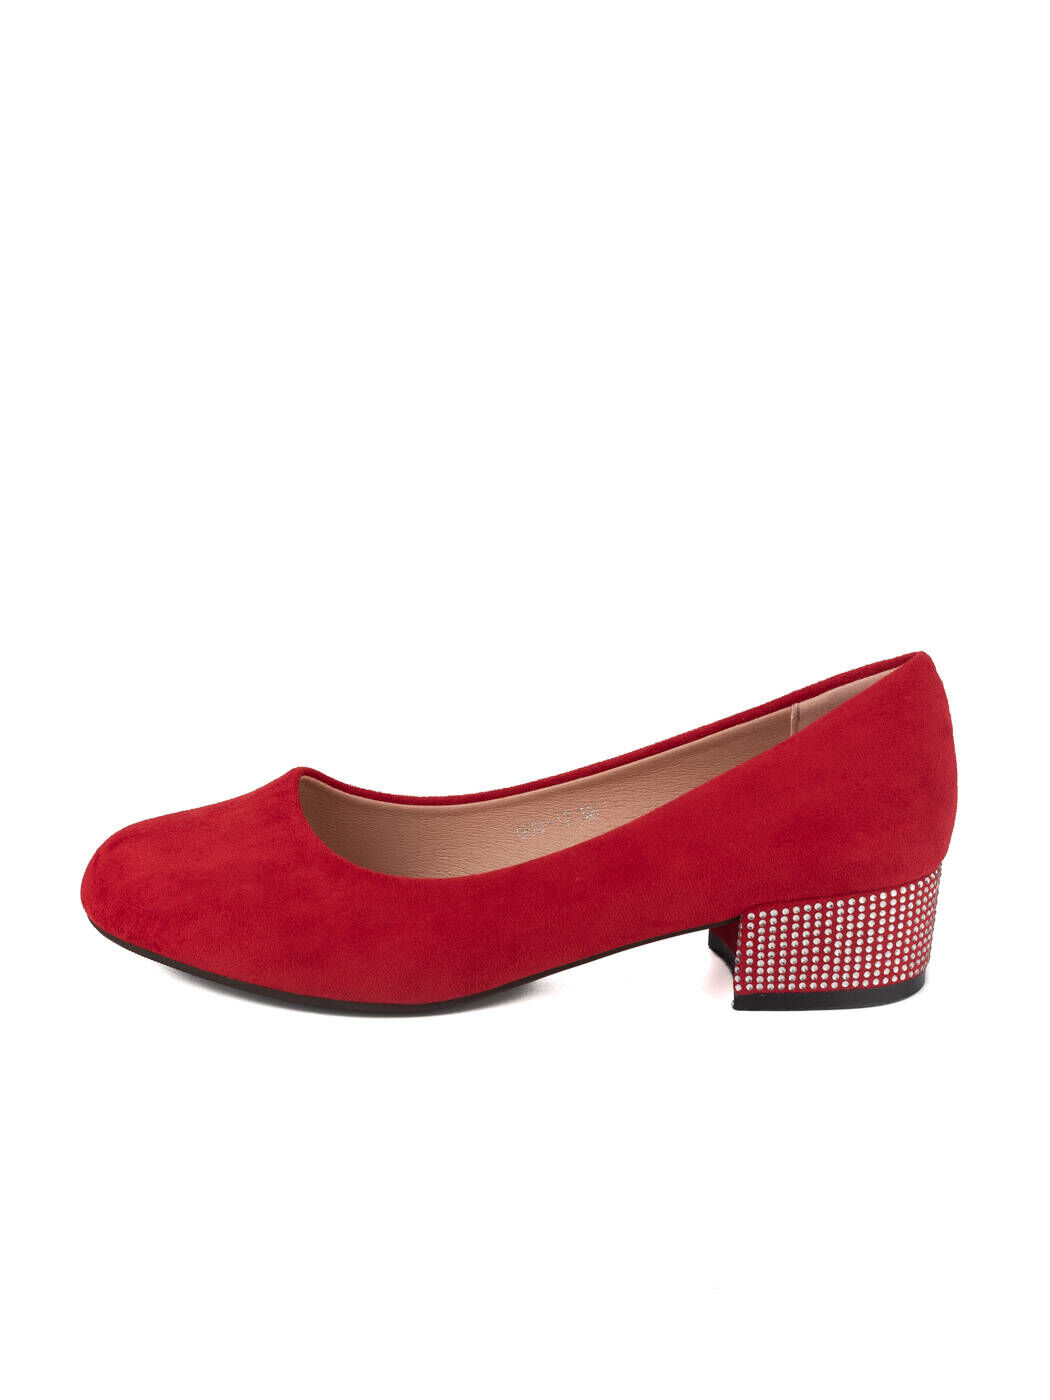 Туфли женские  красные экозамша каблук устойчивый демисезон 17M